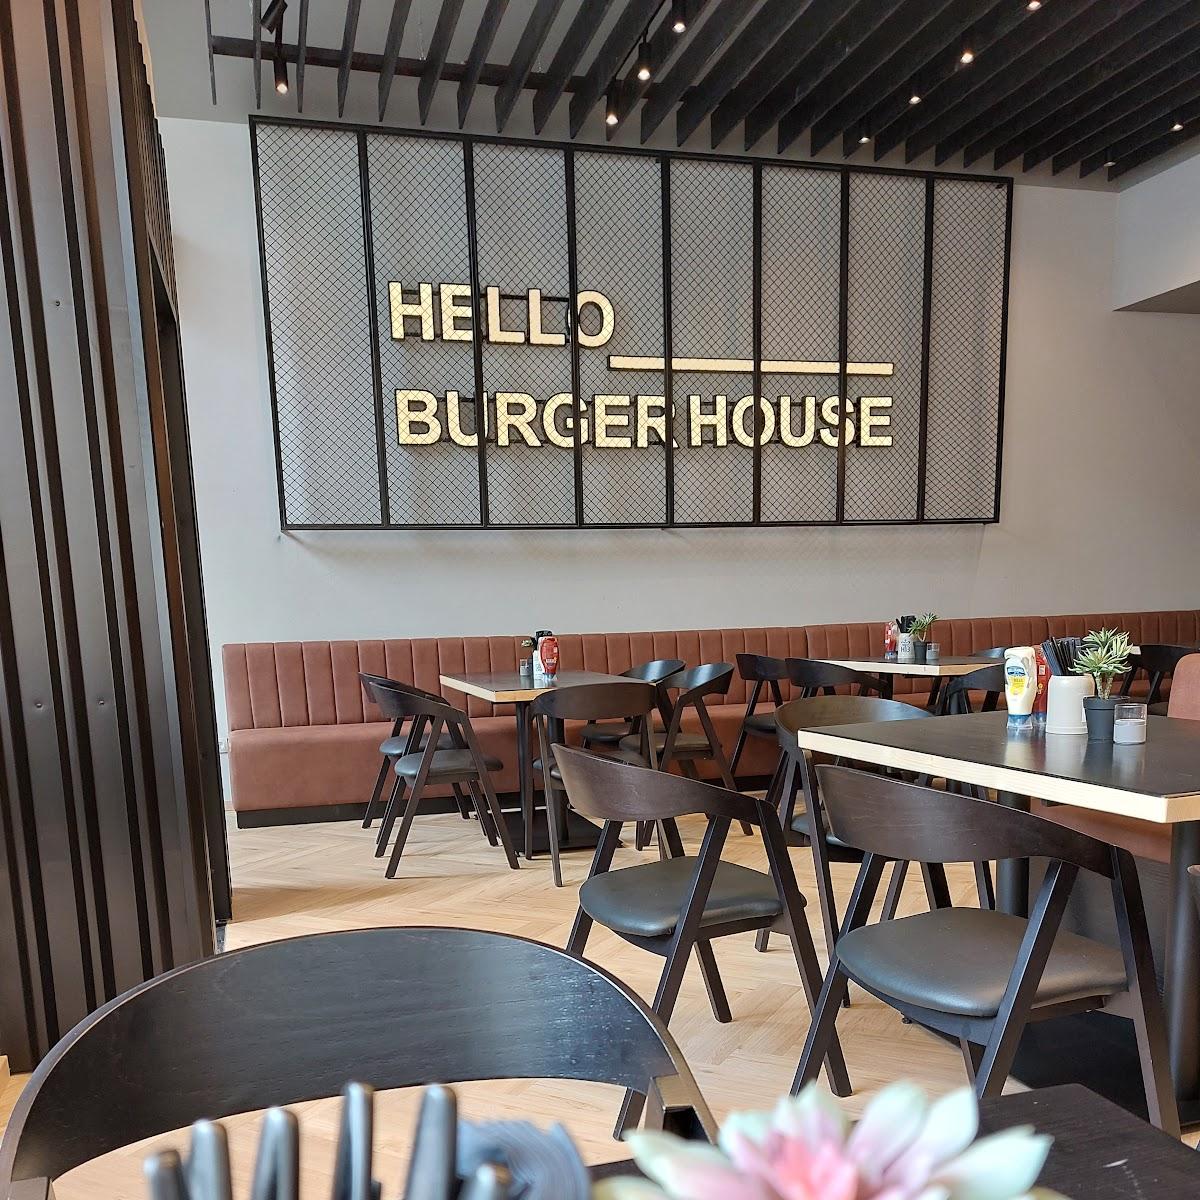 Restaurant "Burger House" in München